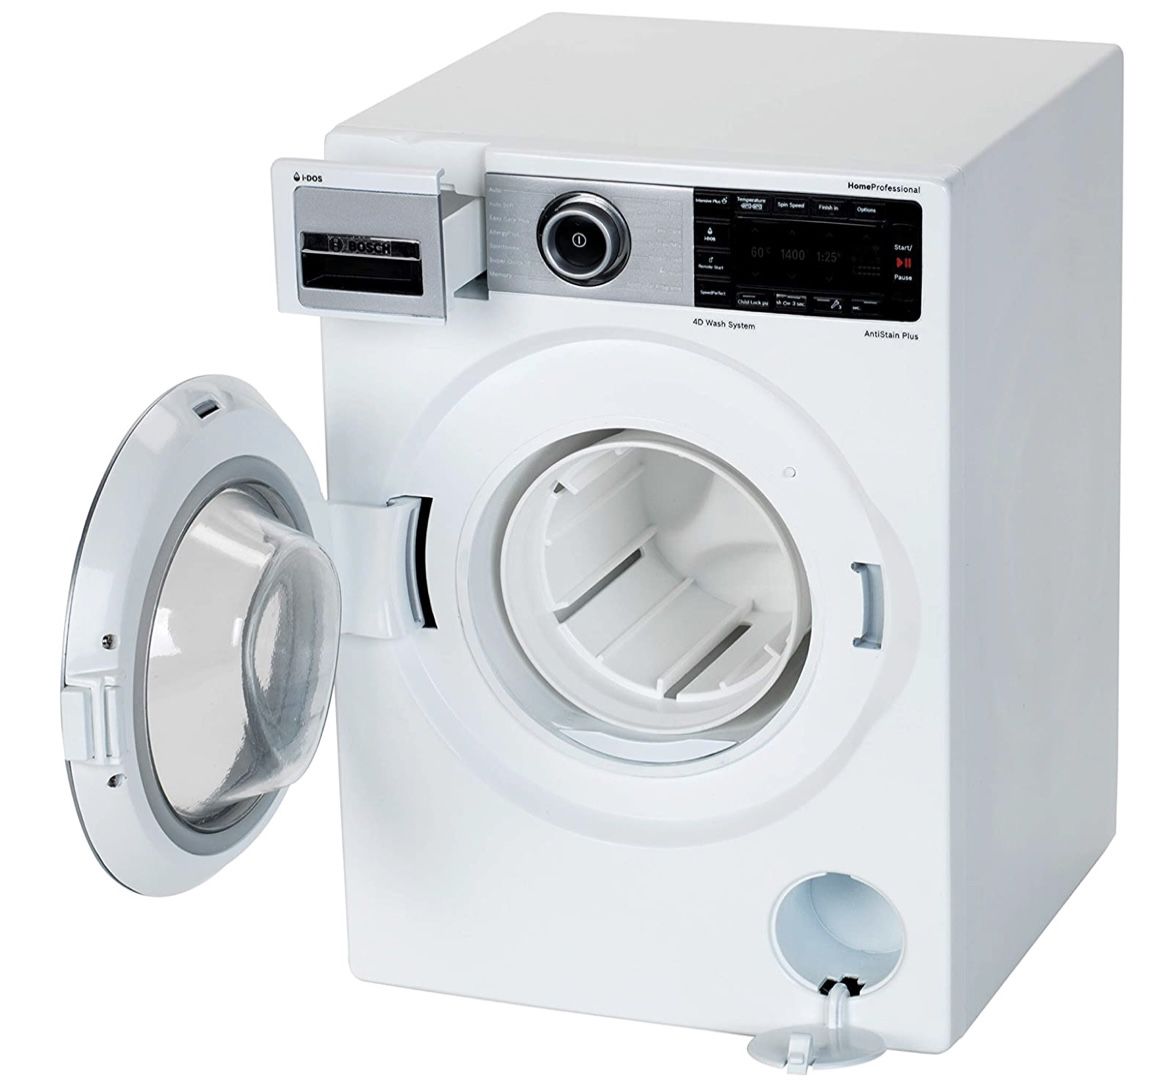 klein toys Bosch Waschmaschine für 34,96€ (statt 46€)